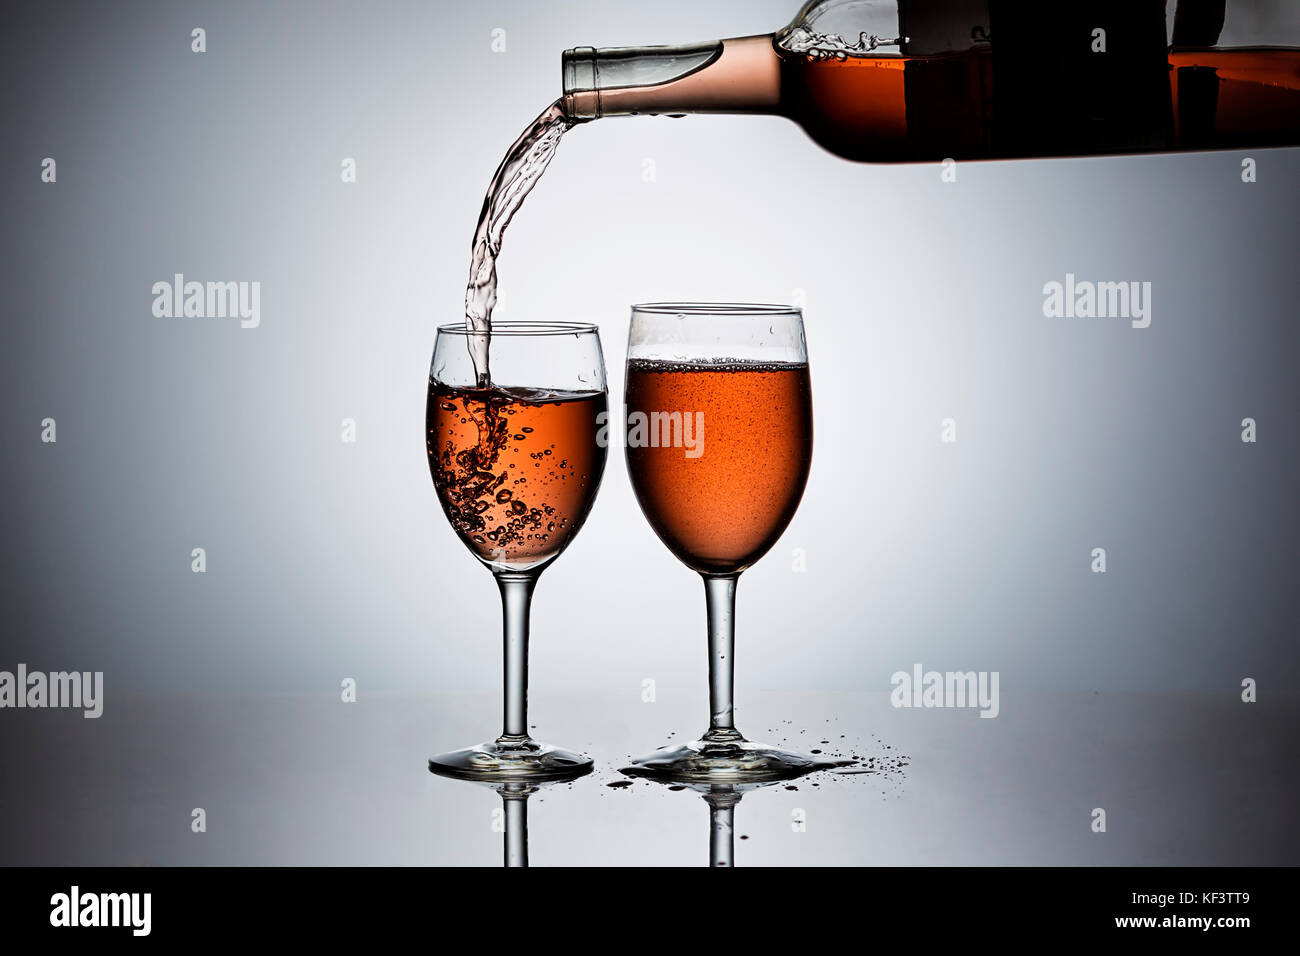 Verter rosa' vino forman una botella en las copas de vino. Foto de stock